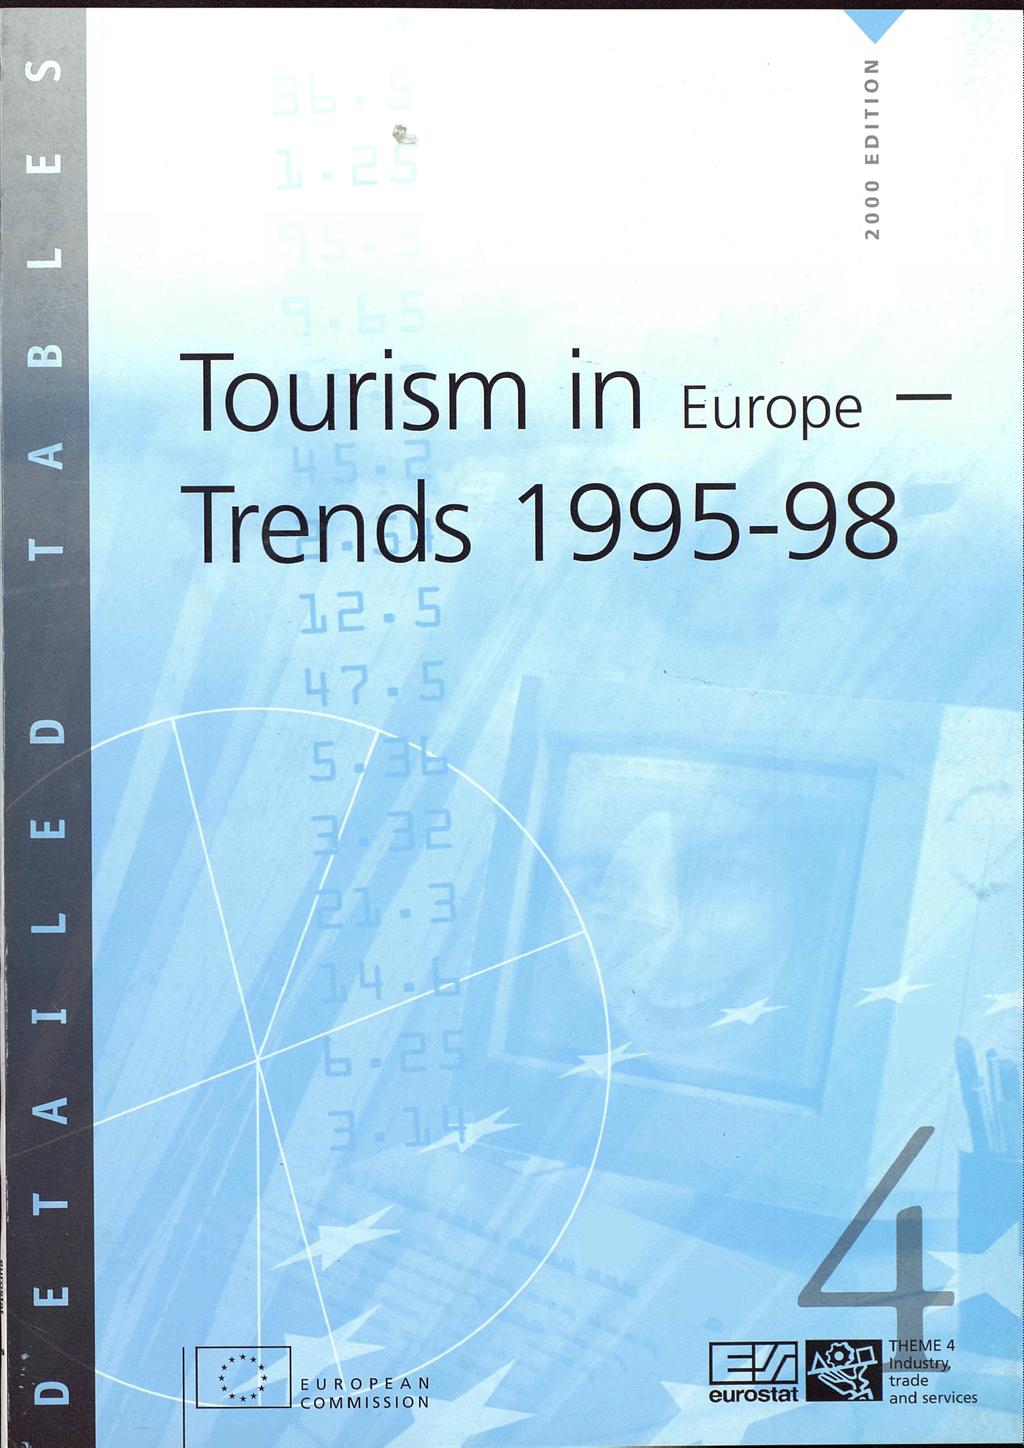 ζ o «* Q αι o TOUriSm Π Europe Trends 1995 98